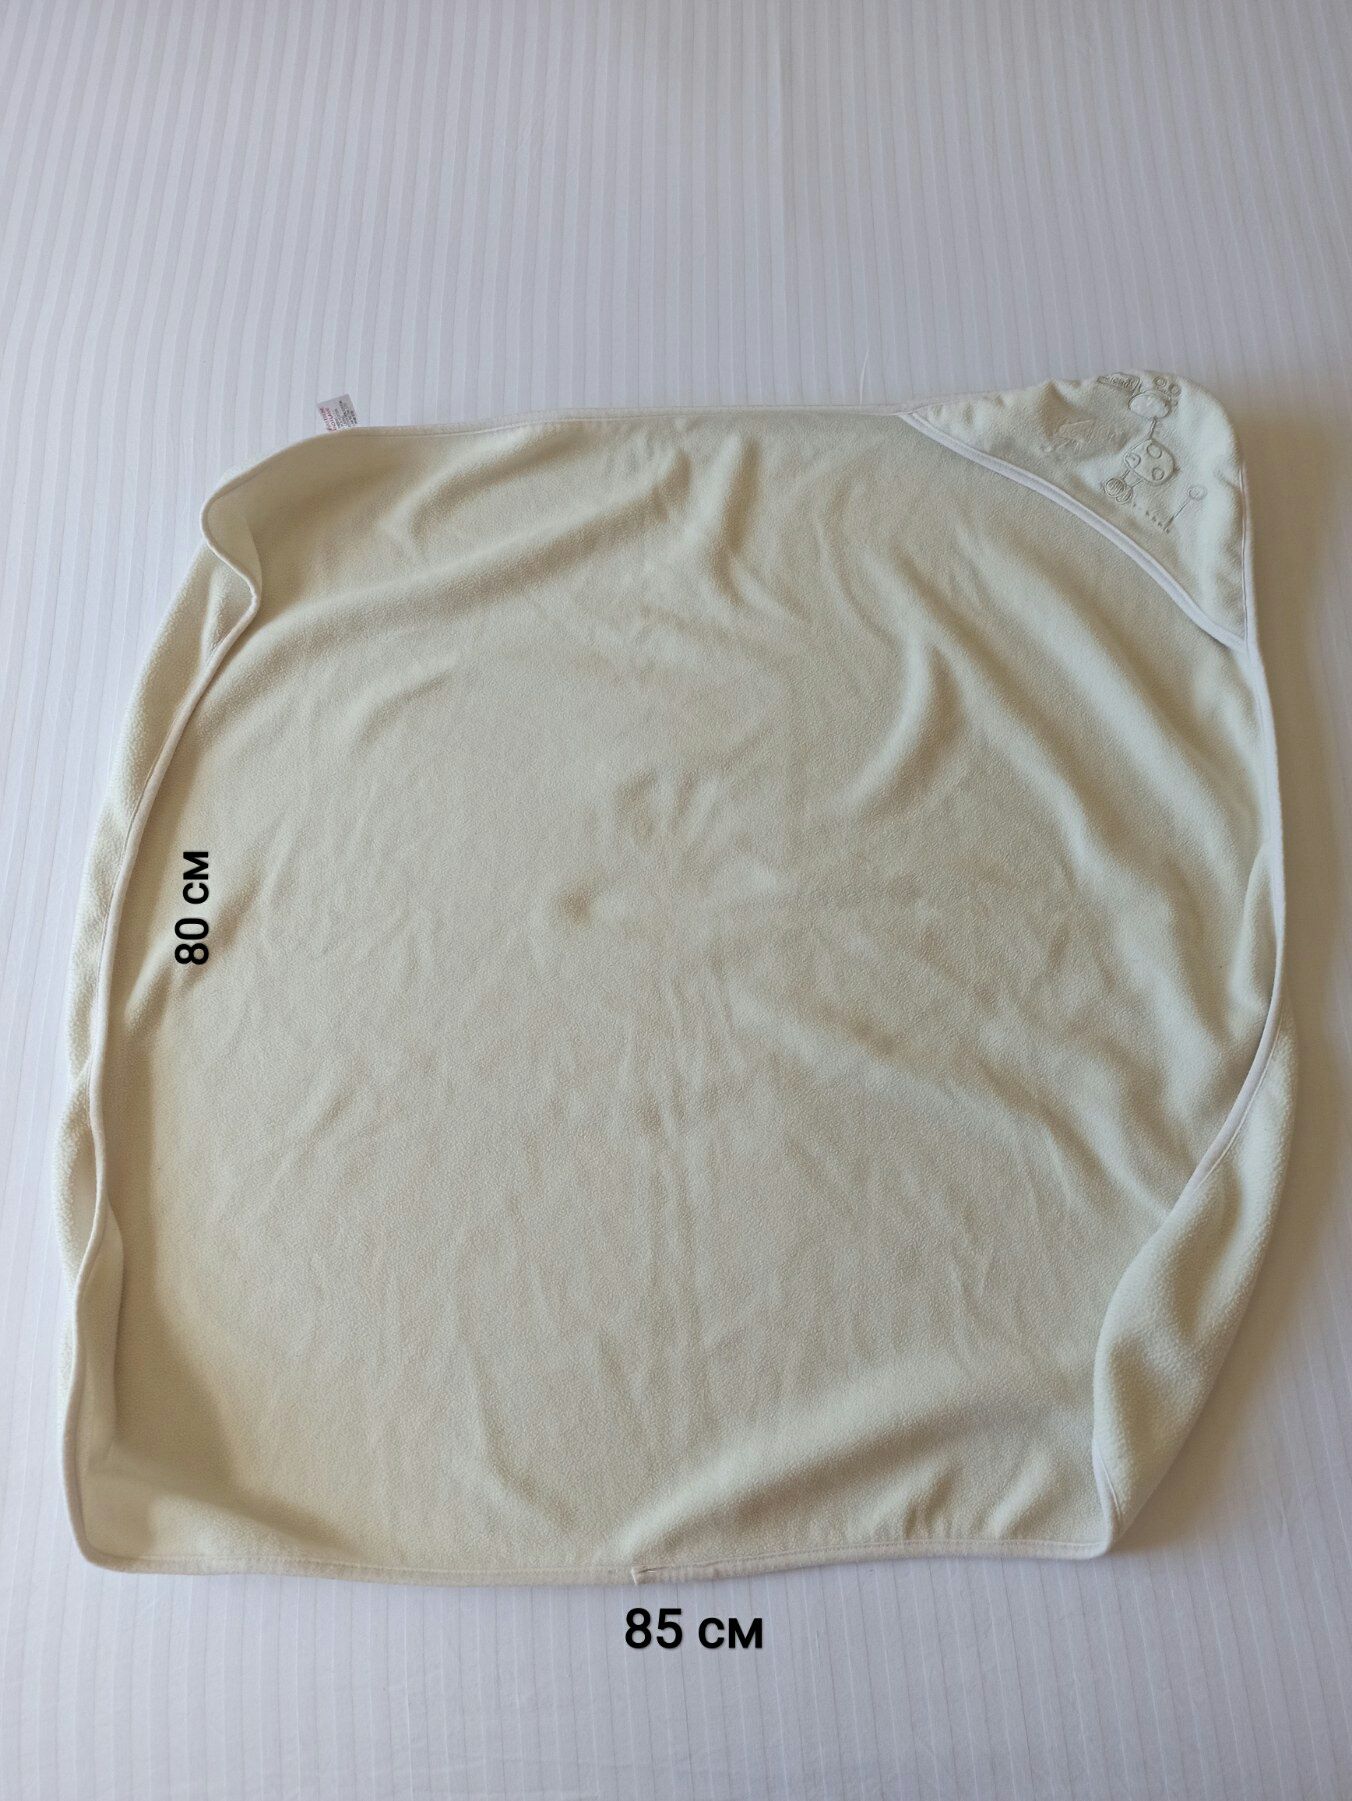 Лот. Спальник и конверт-одеяло для малыша 0-6 мес.